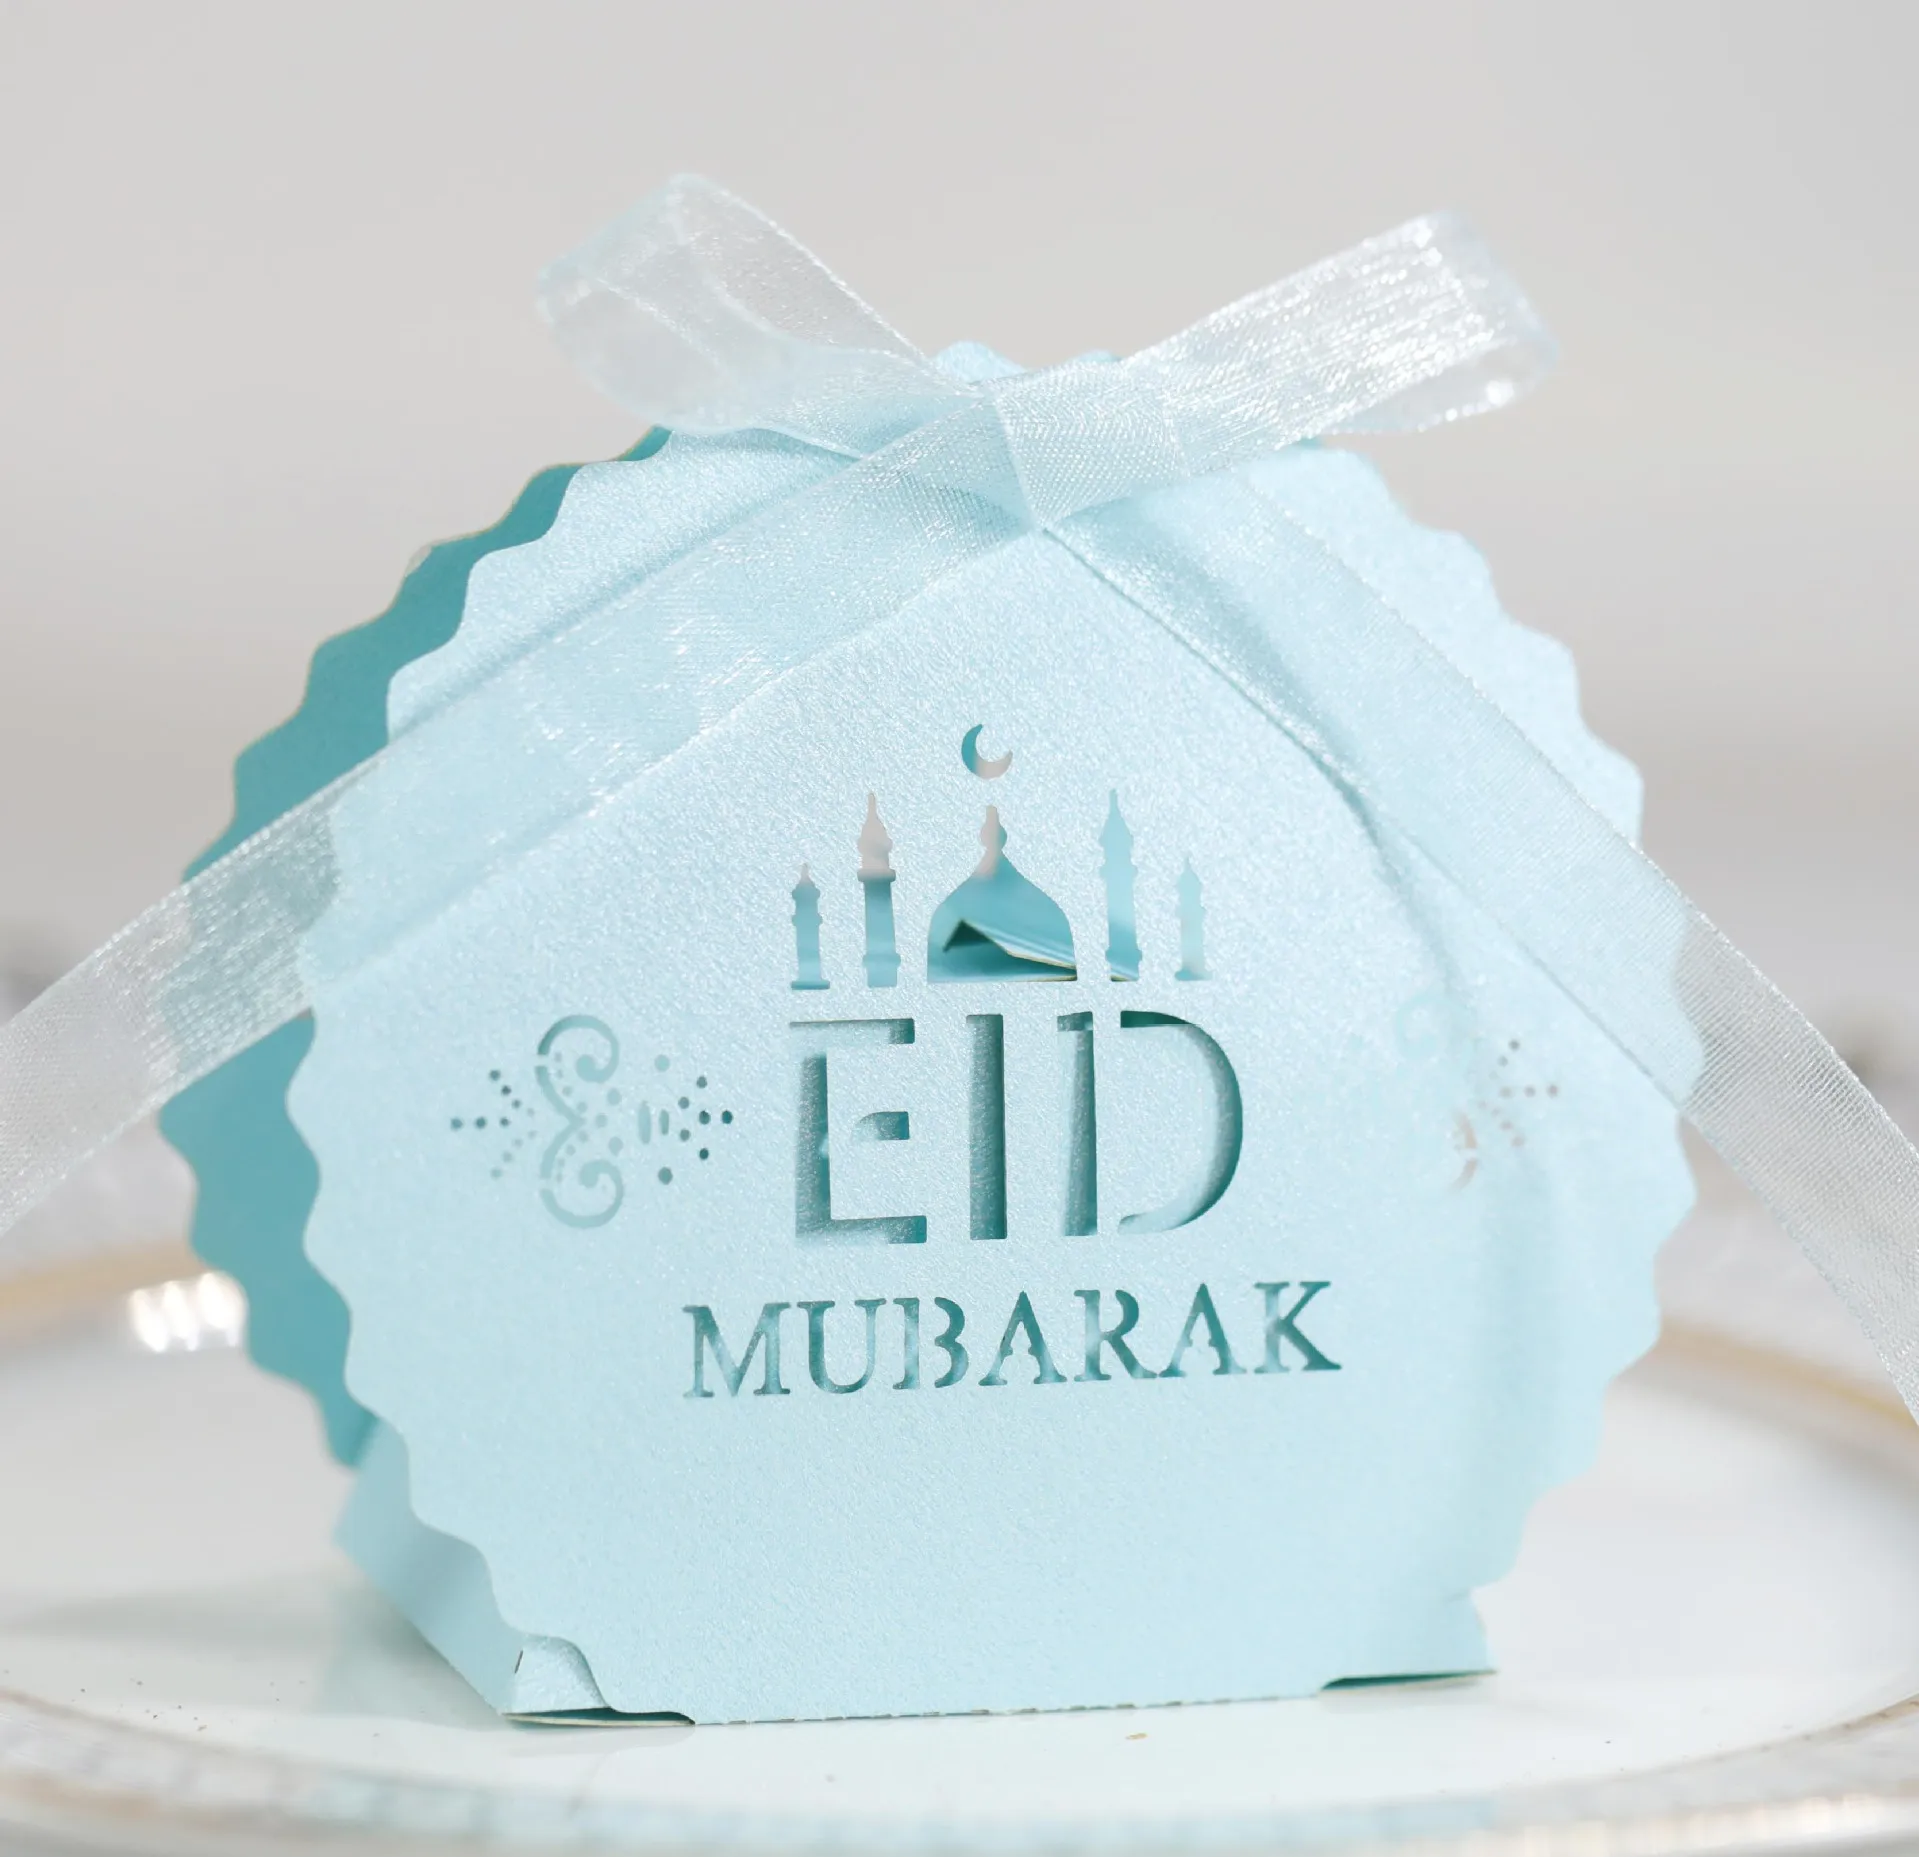 

50 шт. мусульманский ИД Al-fitr Mubarak коробка для конфет Рамадан кареем подарочные коробки мусульманский ИД коробка для шоколавечерние Праздничная поставка 10 шт. мусульманский ИД